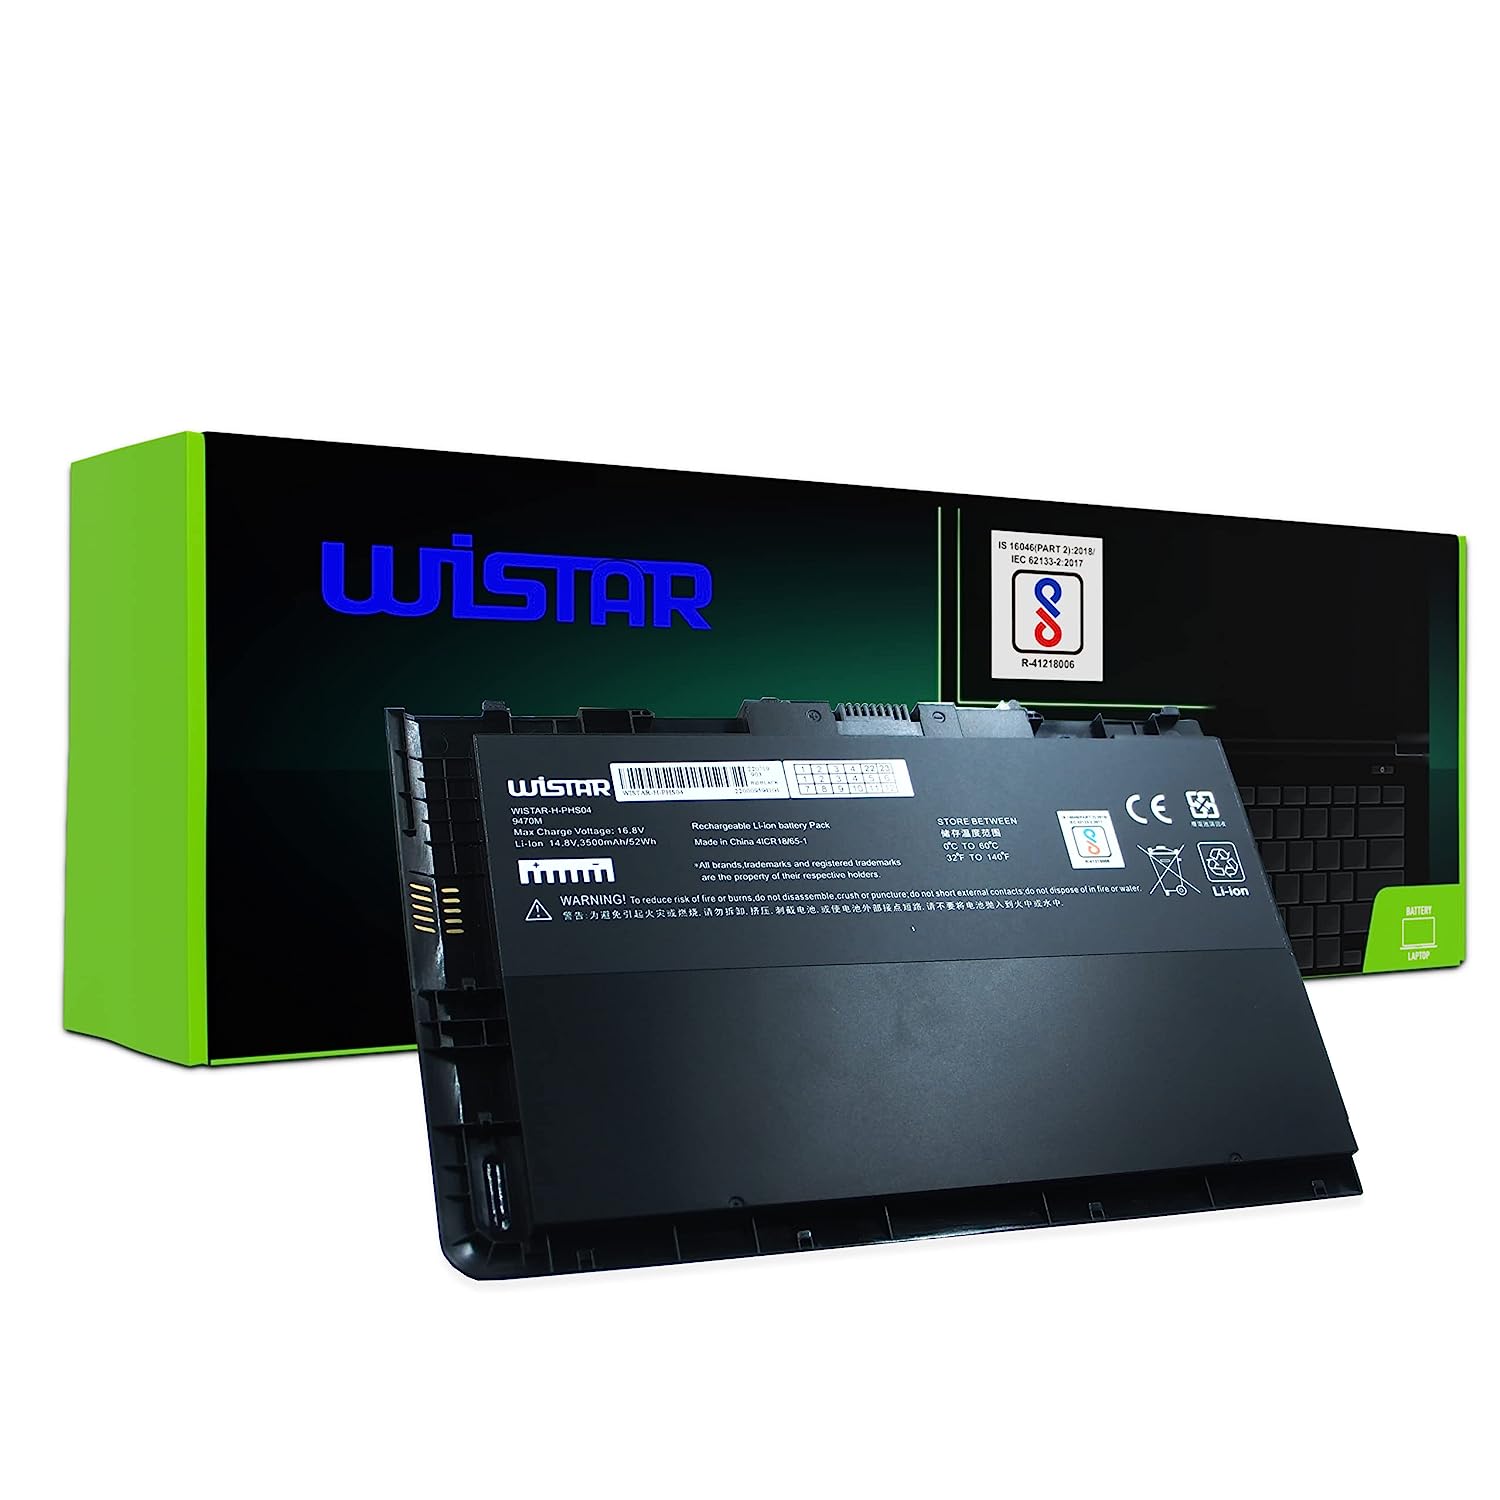 WISTAR BT04XL Notebook Battery for HP EliteBook Folio 9470 9470M Series Laptop fits BA06 BA06XL Battery Spare 687945-001 696621-001 H4Q47AA H4Q48AA HSTNN-I10C HSTNN-DB3Z